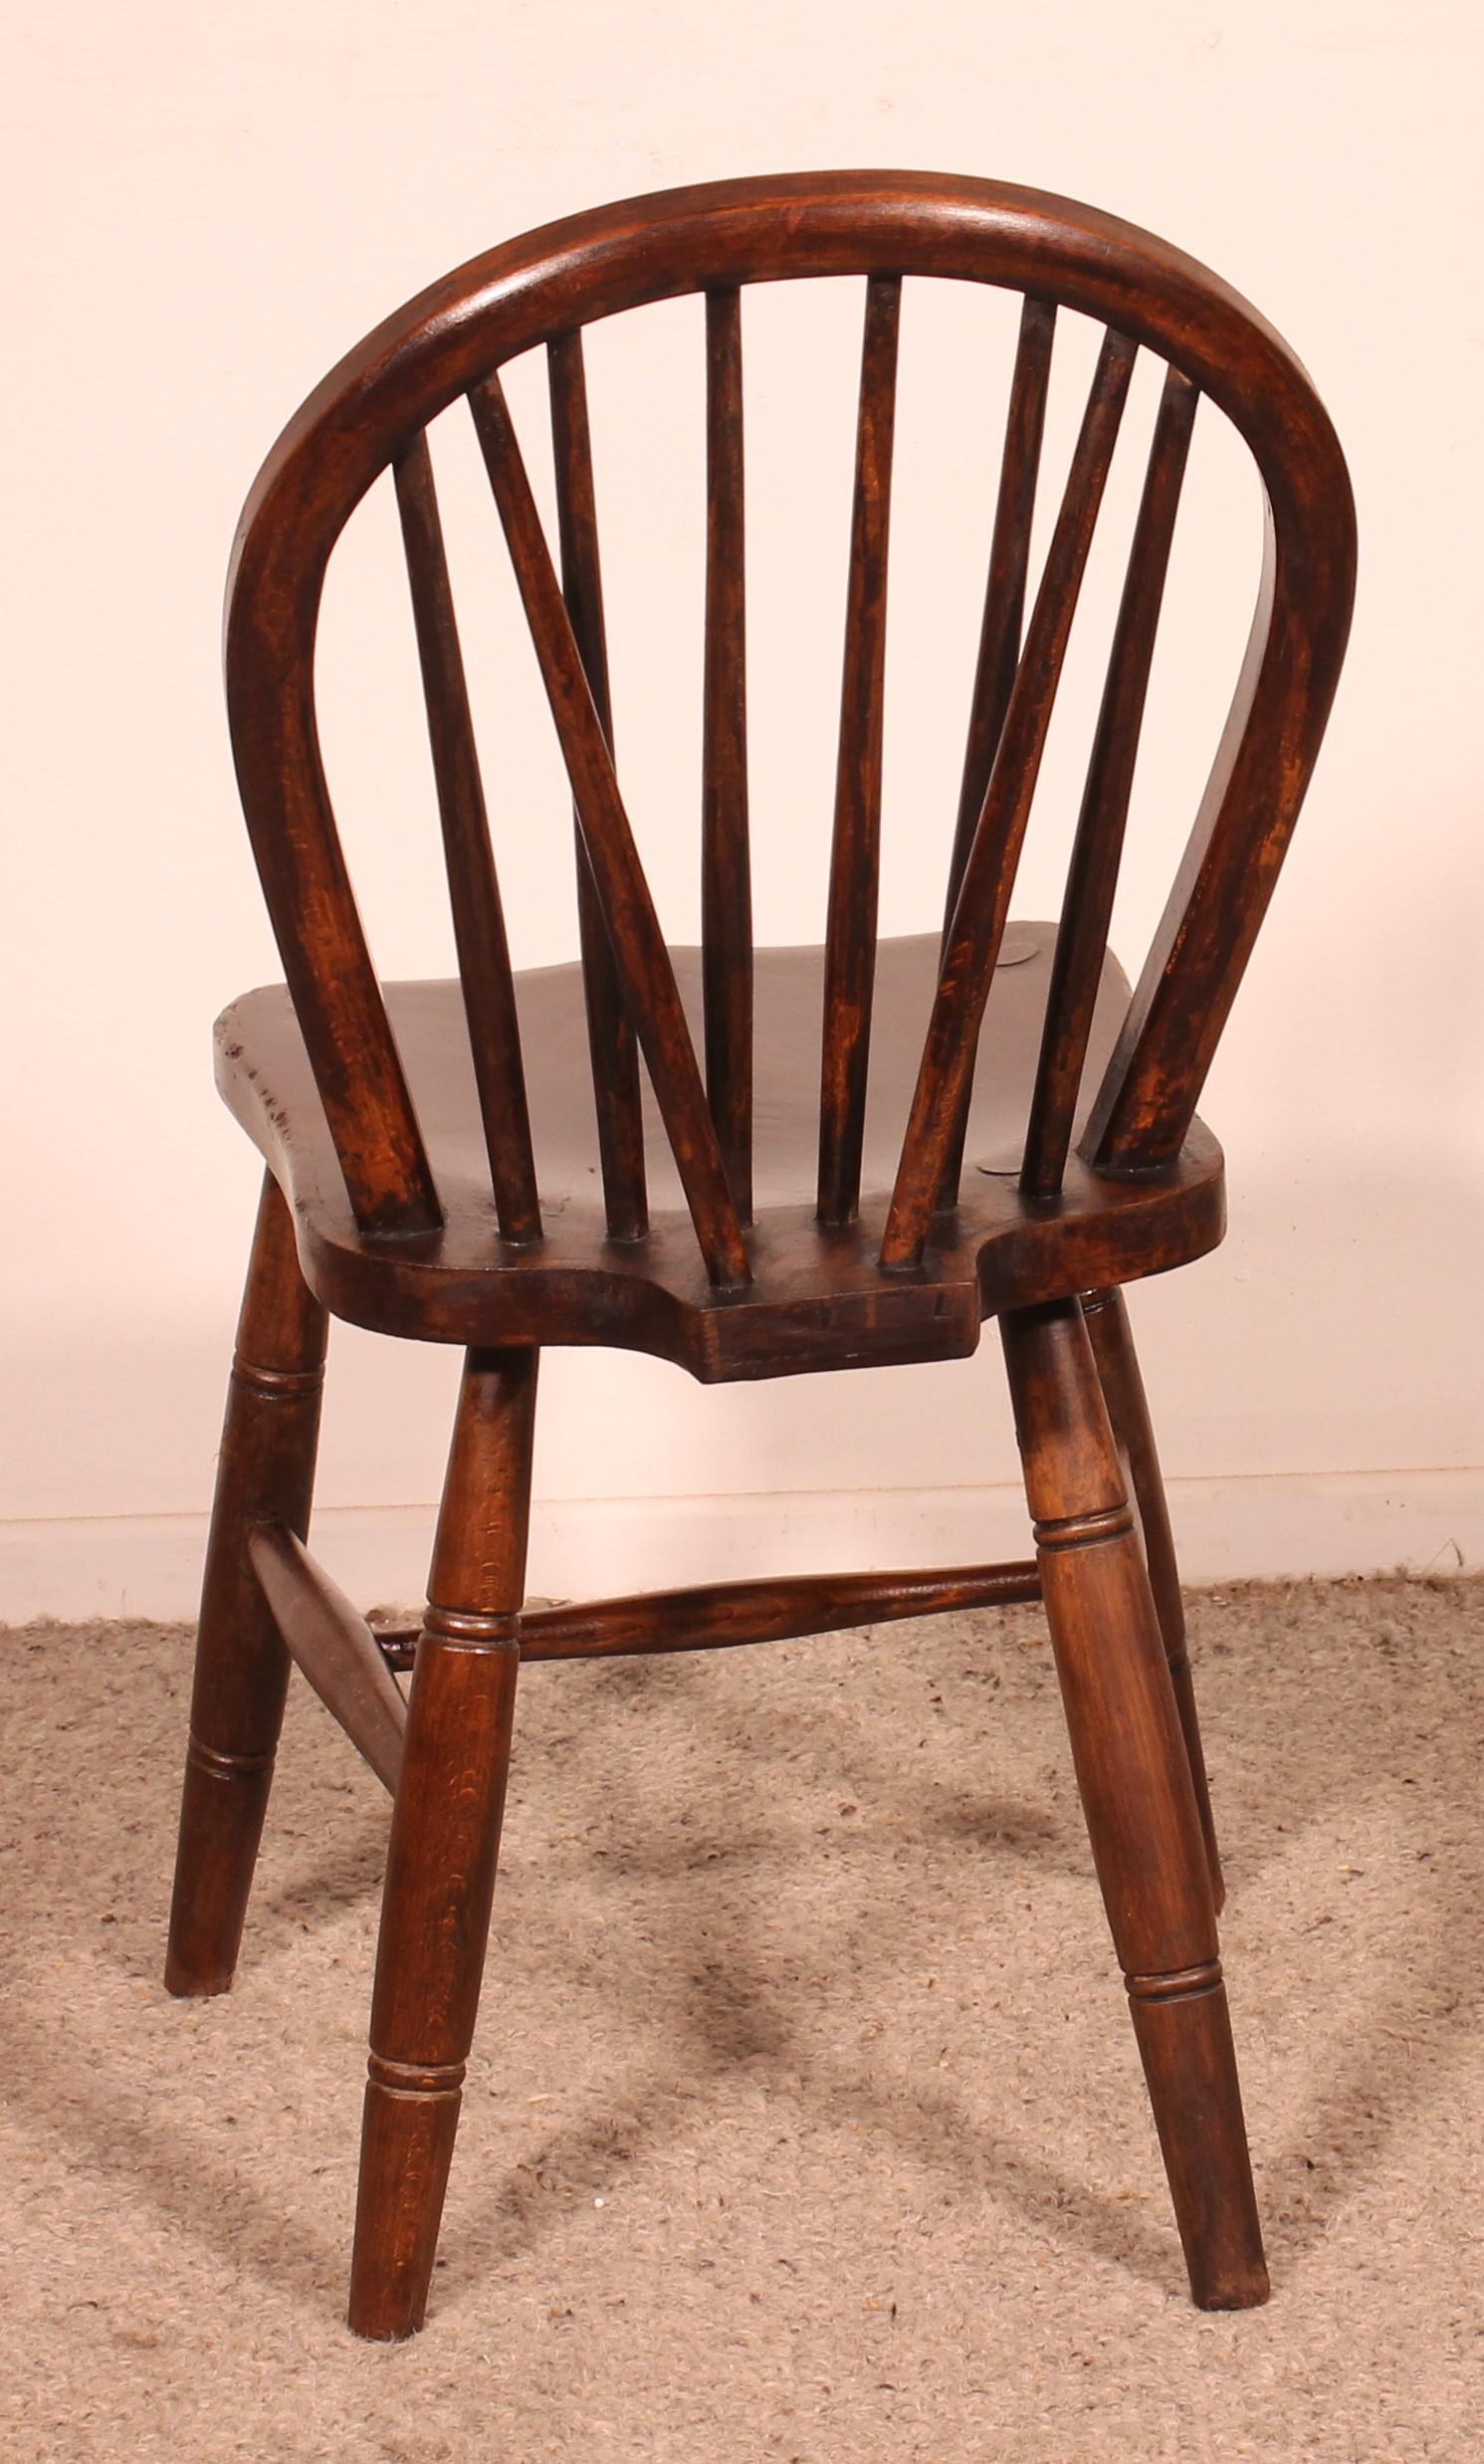 Elegantes Set aus 4 englischen Windsor-Stühlen aus dem 19. Jahrhundert in Kastanie
ein hochwertiges Set mit einem eleganten Sockel und einer Rückseite aus kleinen Stäben, die ihnen ein originelles Aussehen verleihen
Sehr schöne Patina und in